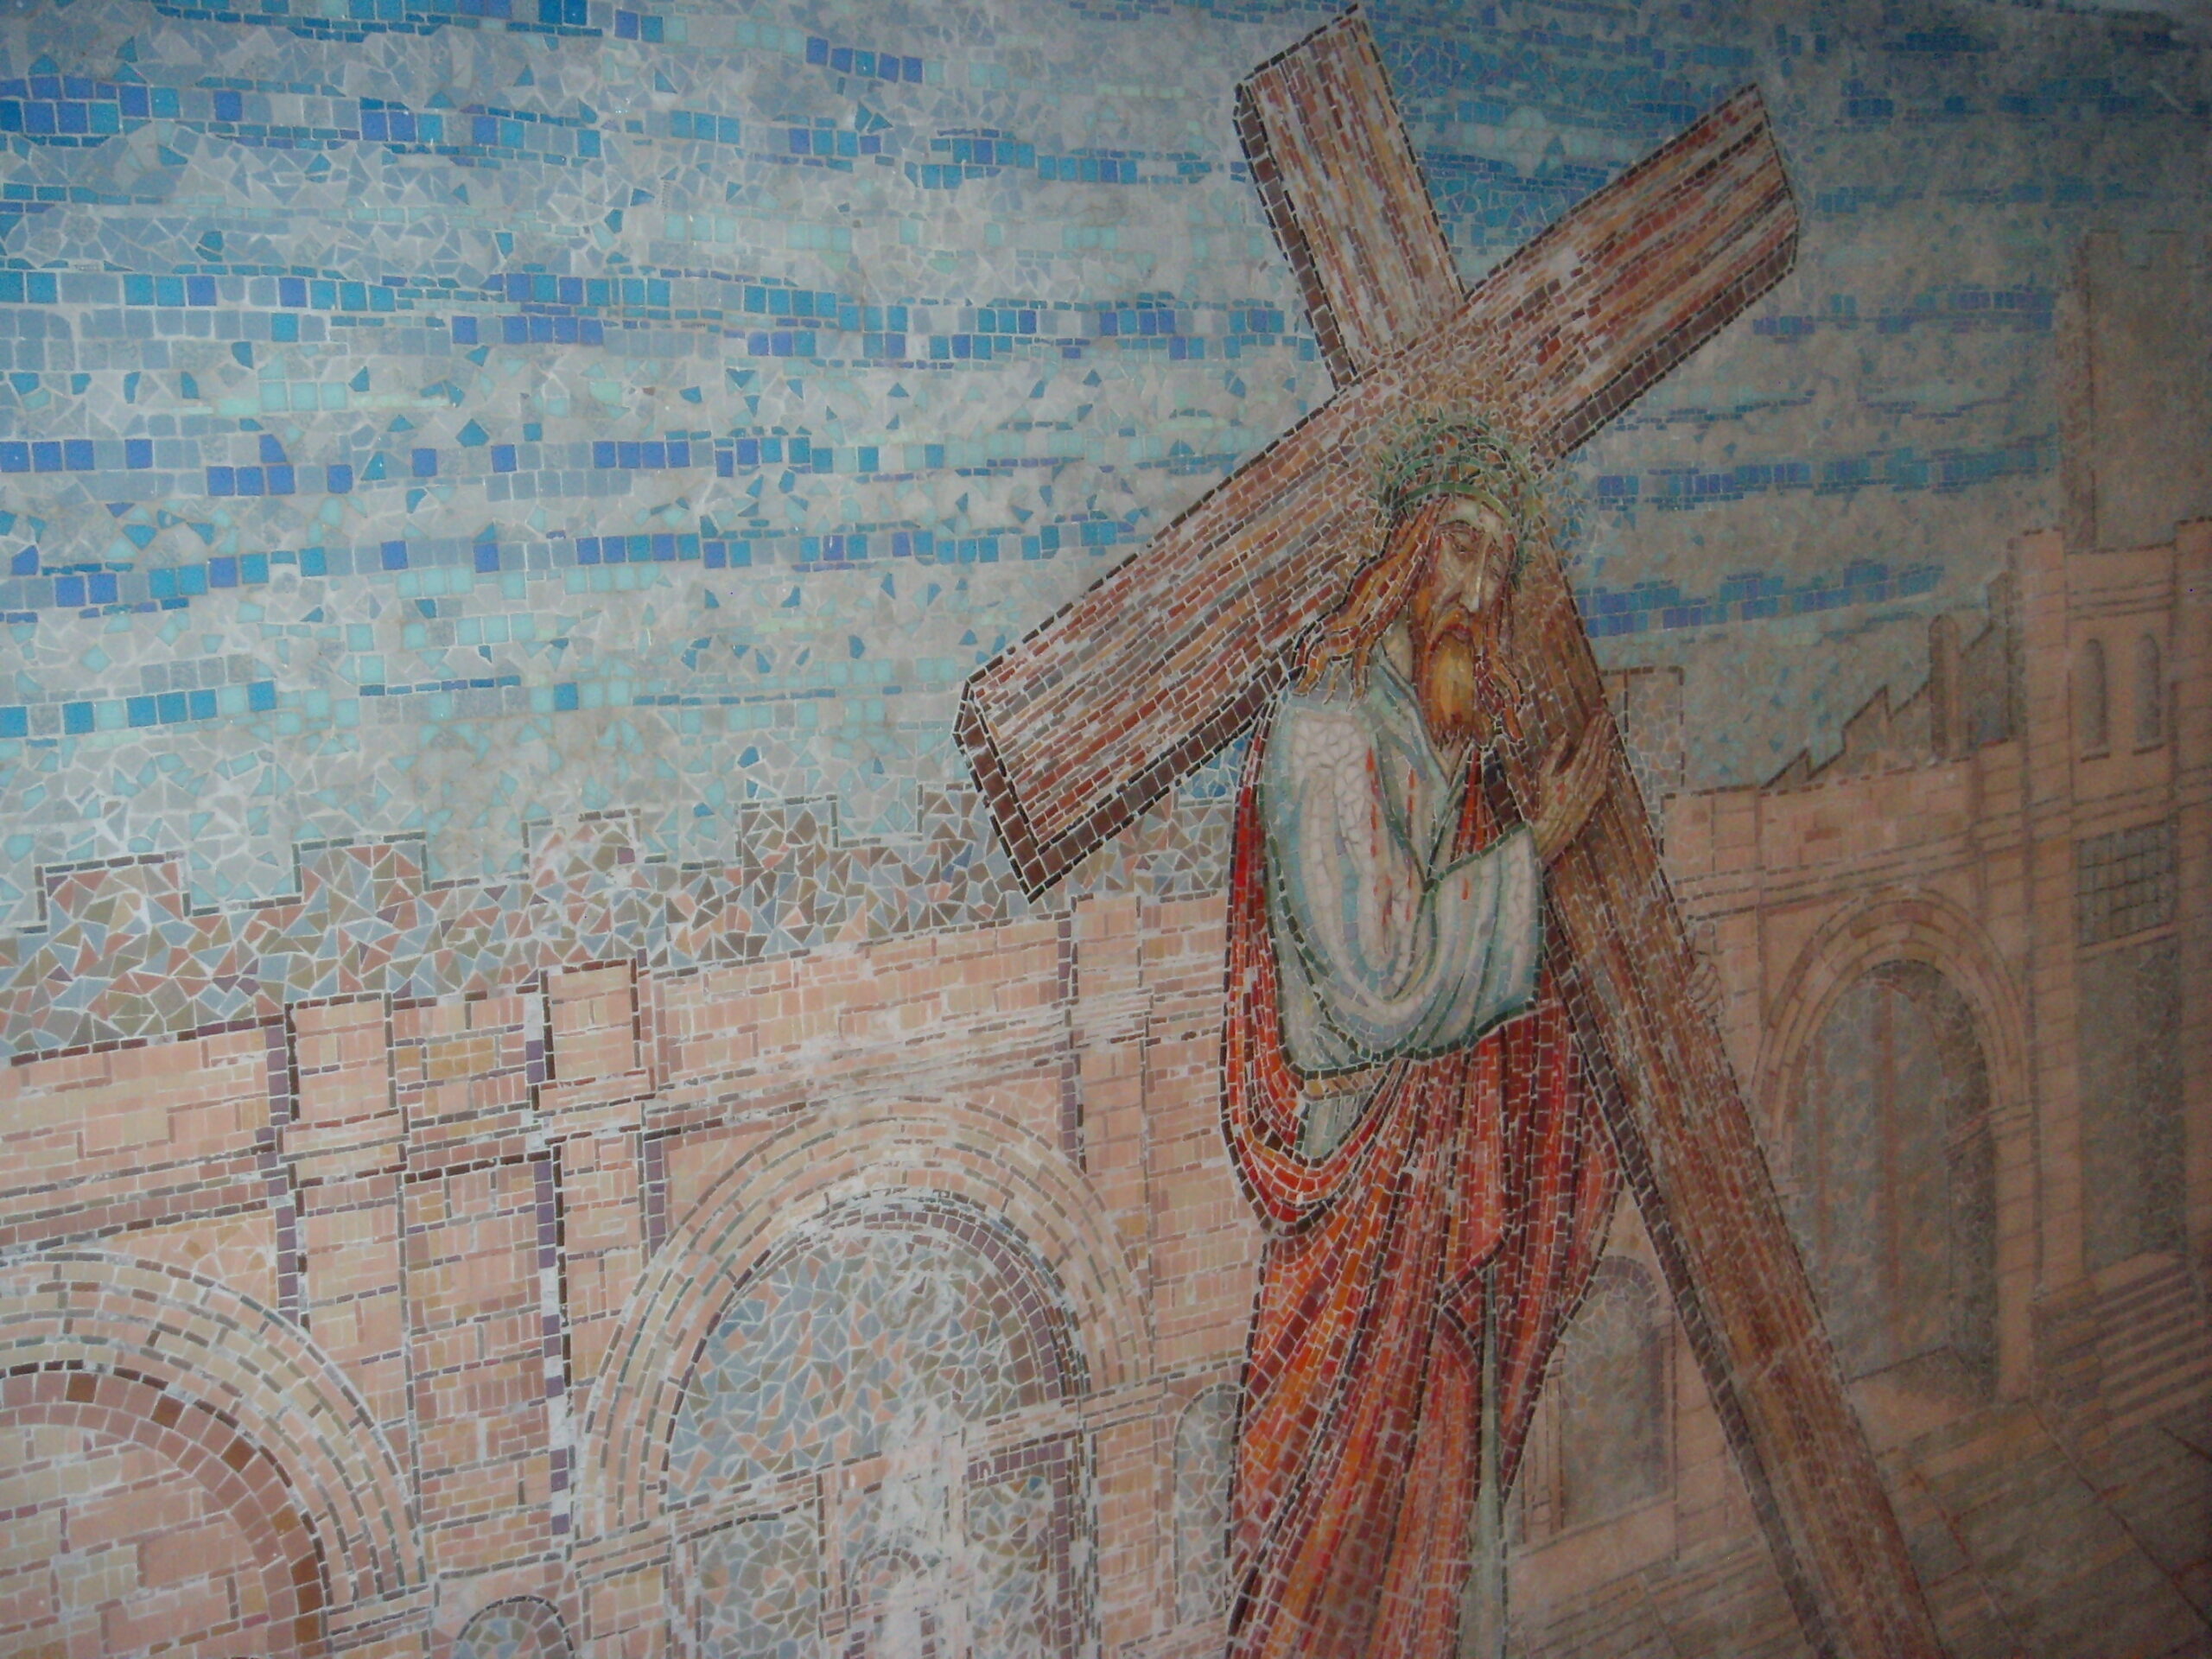 mural of Jesus carrying cross